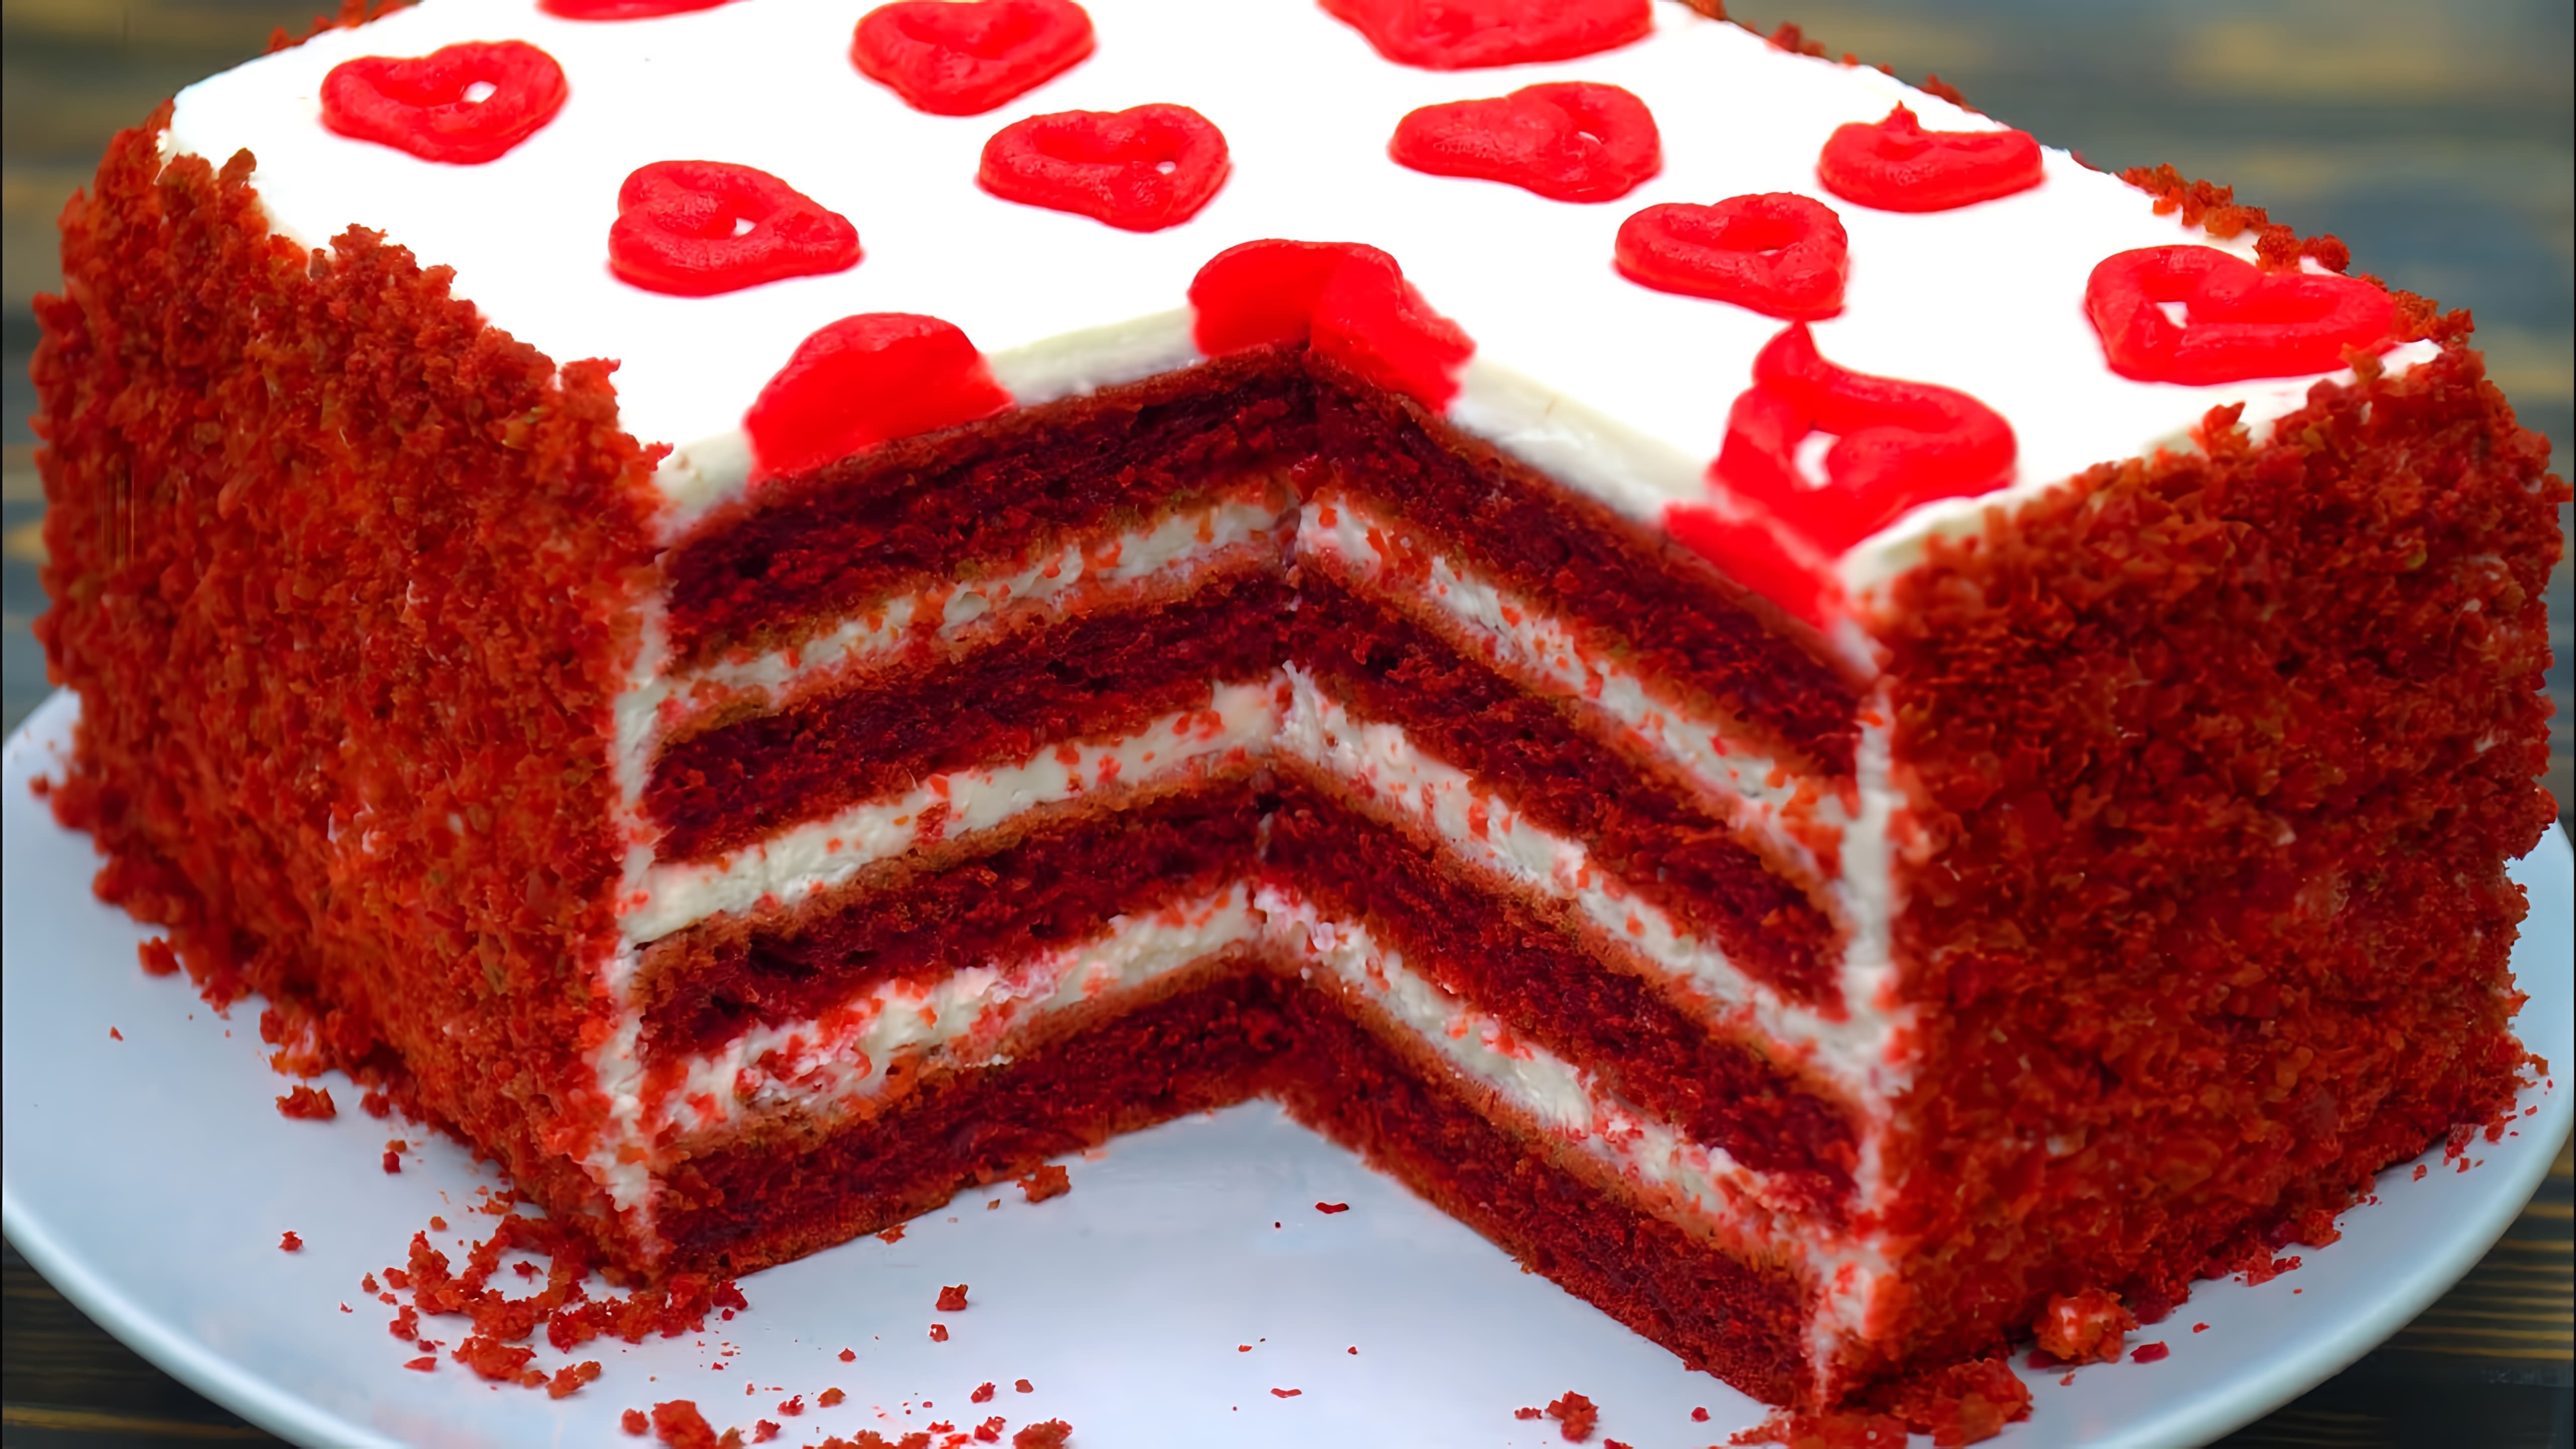 В этом видео демонстрируется рецепт приготовления торта красный бархат